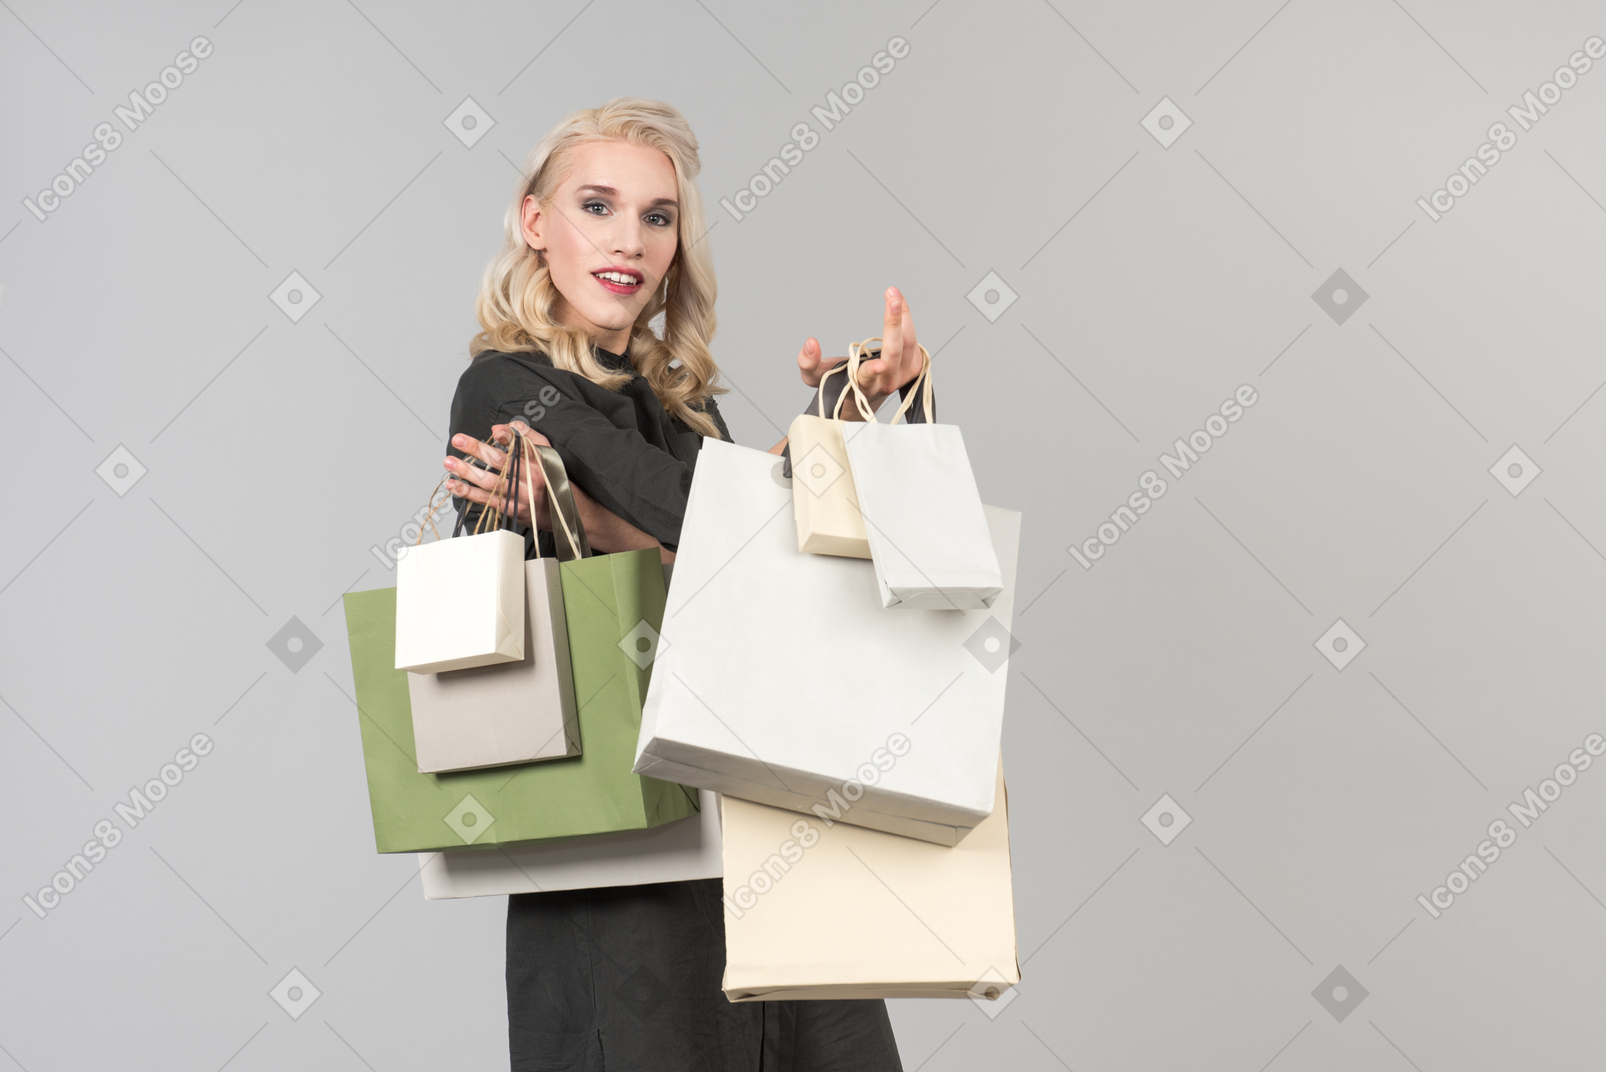 Une belle jeune personne aux cheveux blonds vêtue d'une robe noire tenant un tas de sacs à provisions à la main